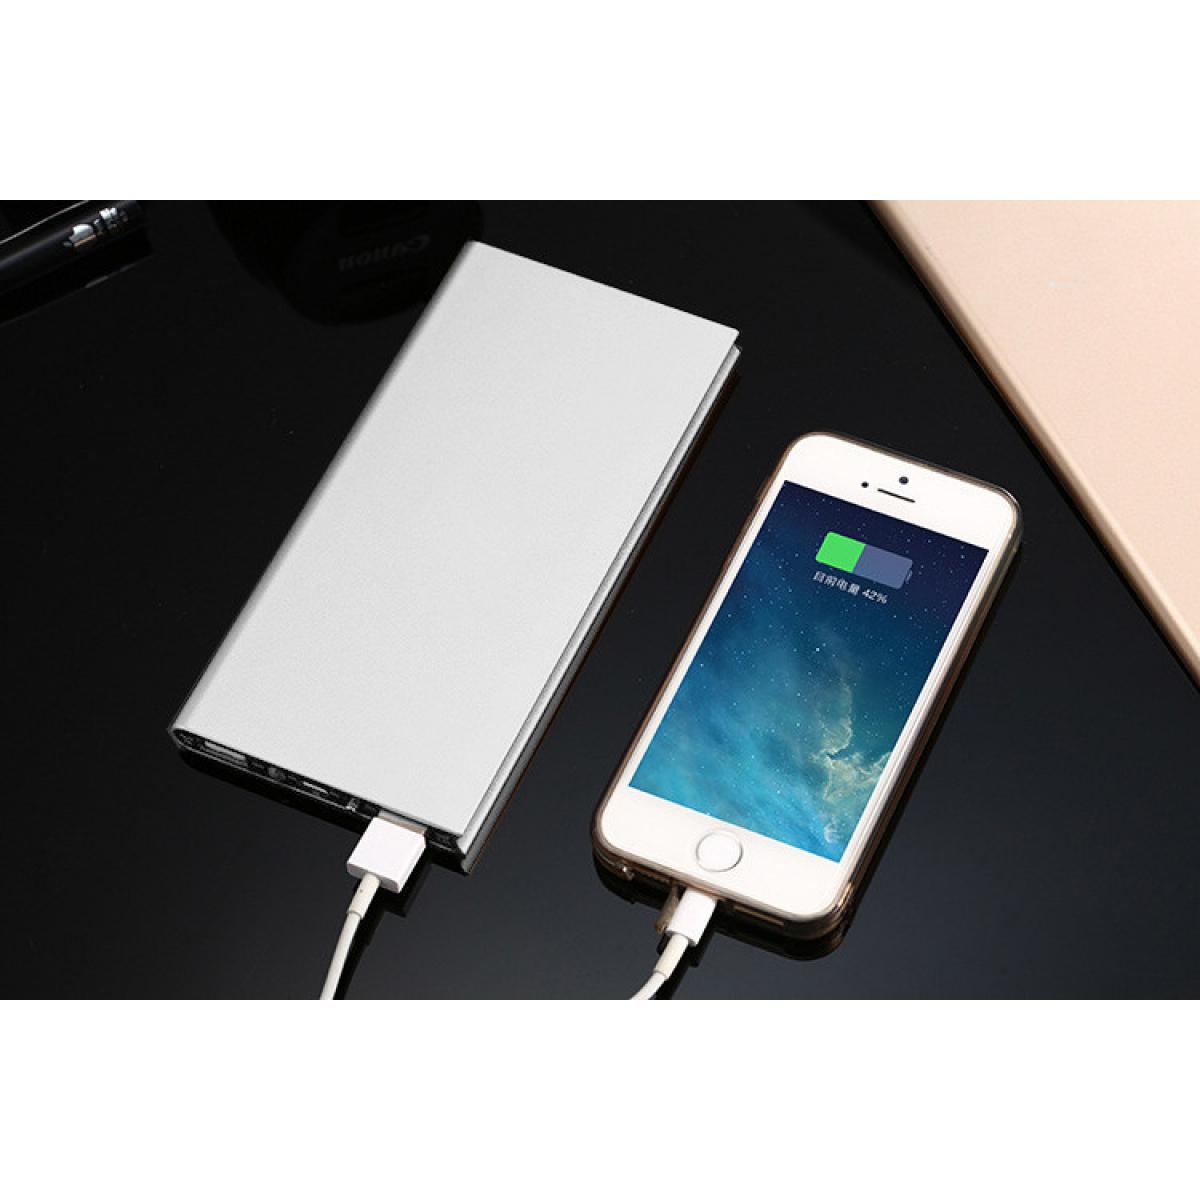 Shot - Batterie Externe Plate pour ALCATEL 1 2019 Smartphone Tablette Chargeur Power Bank 6000mAh 2 Port USB (ARGENT) - Chargeur secteur téléphone